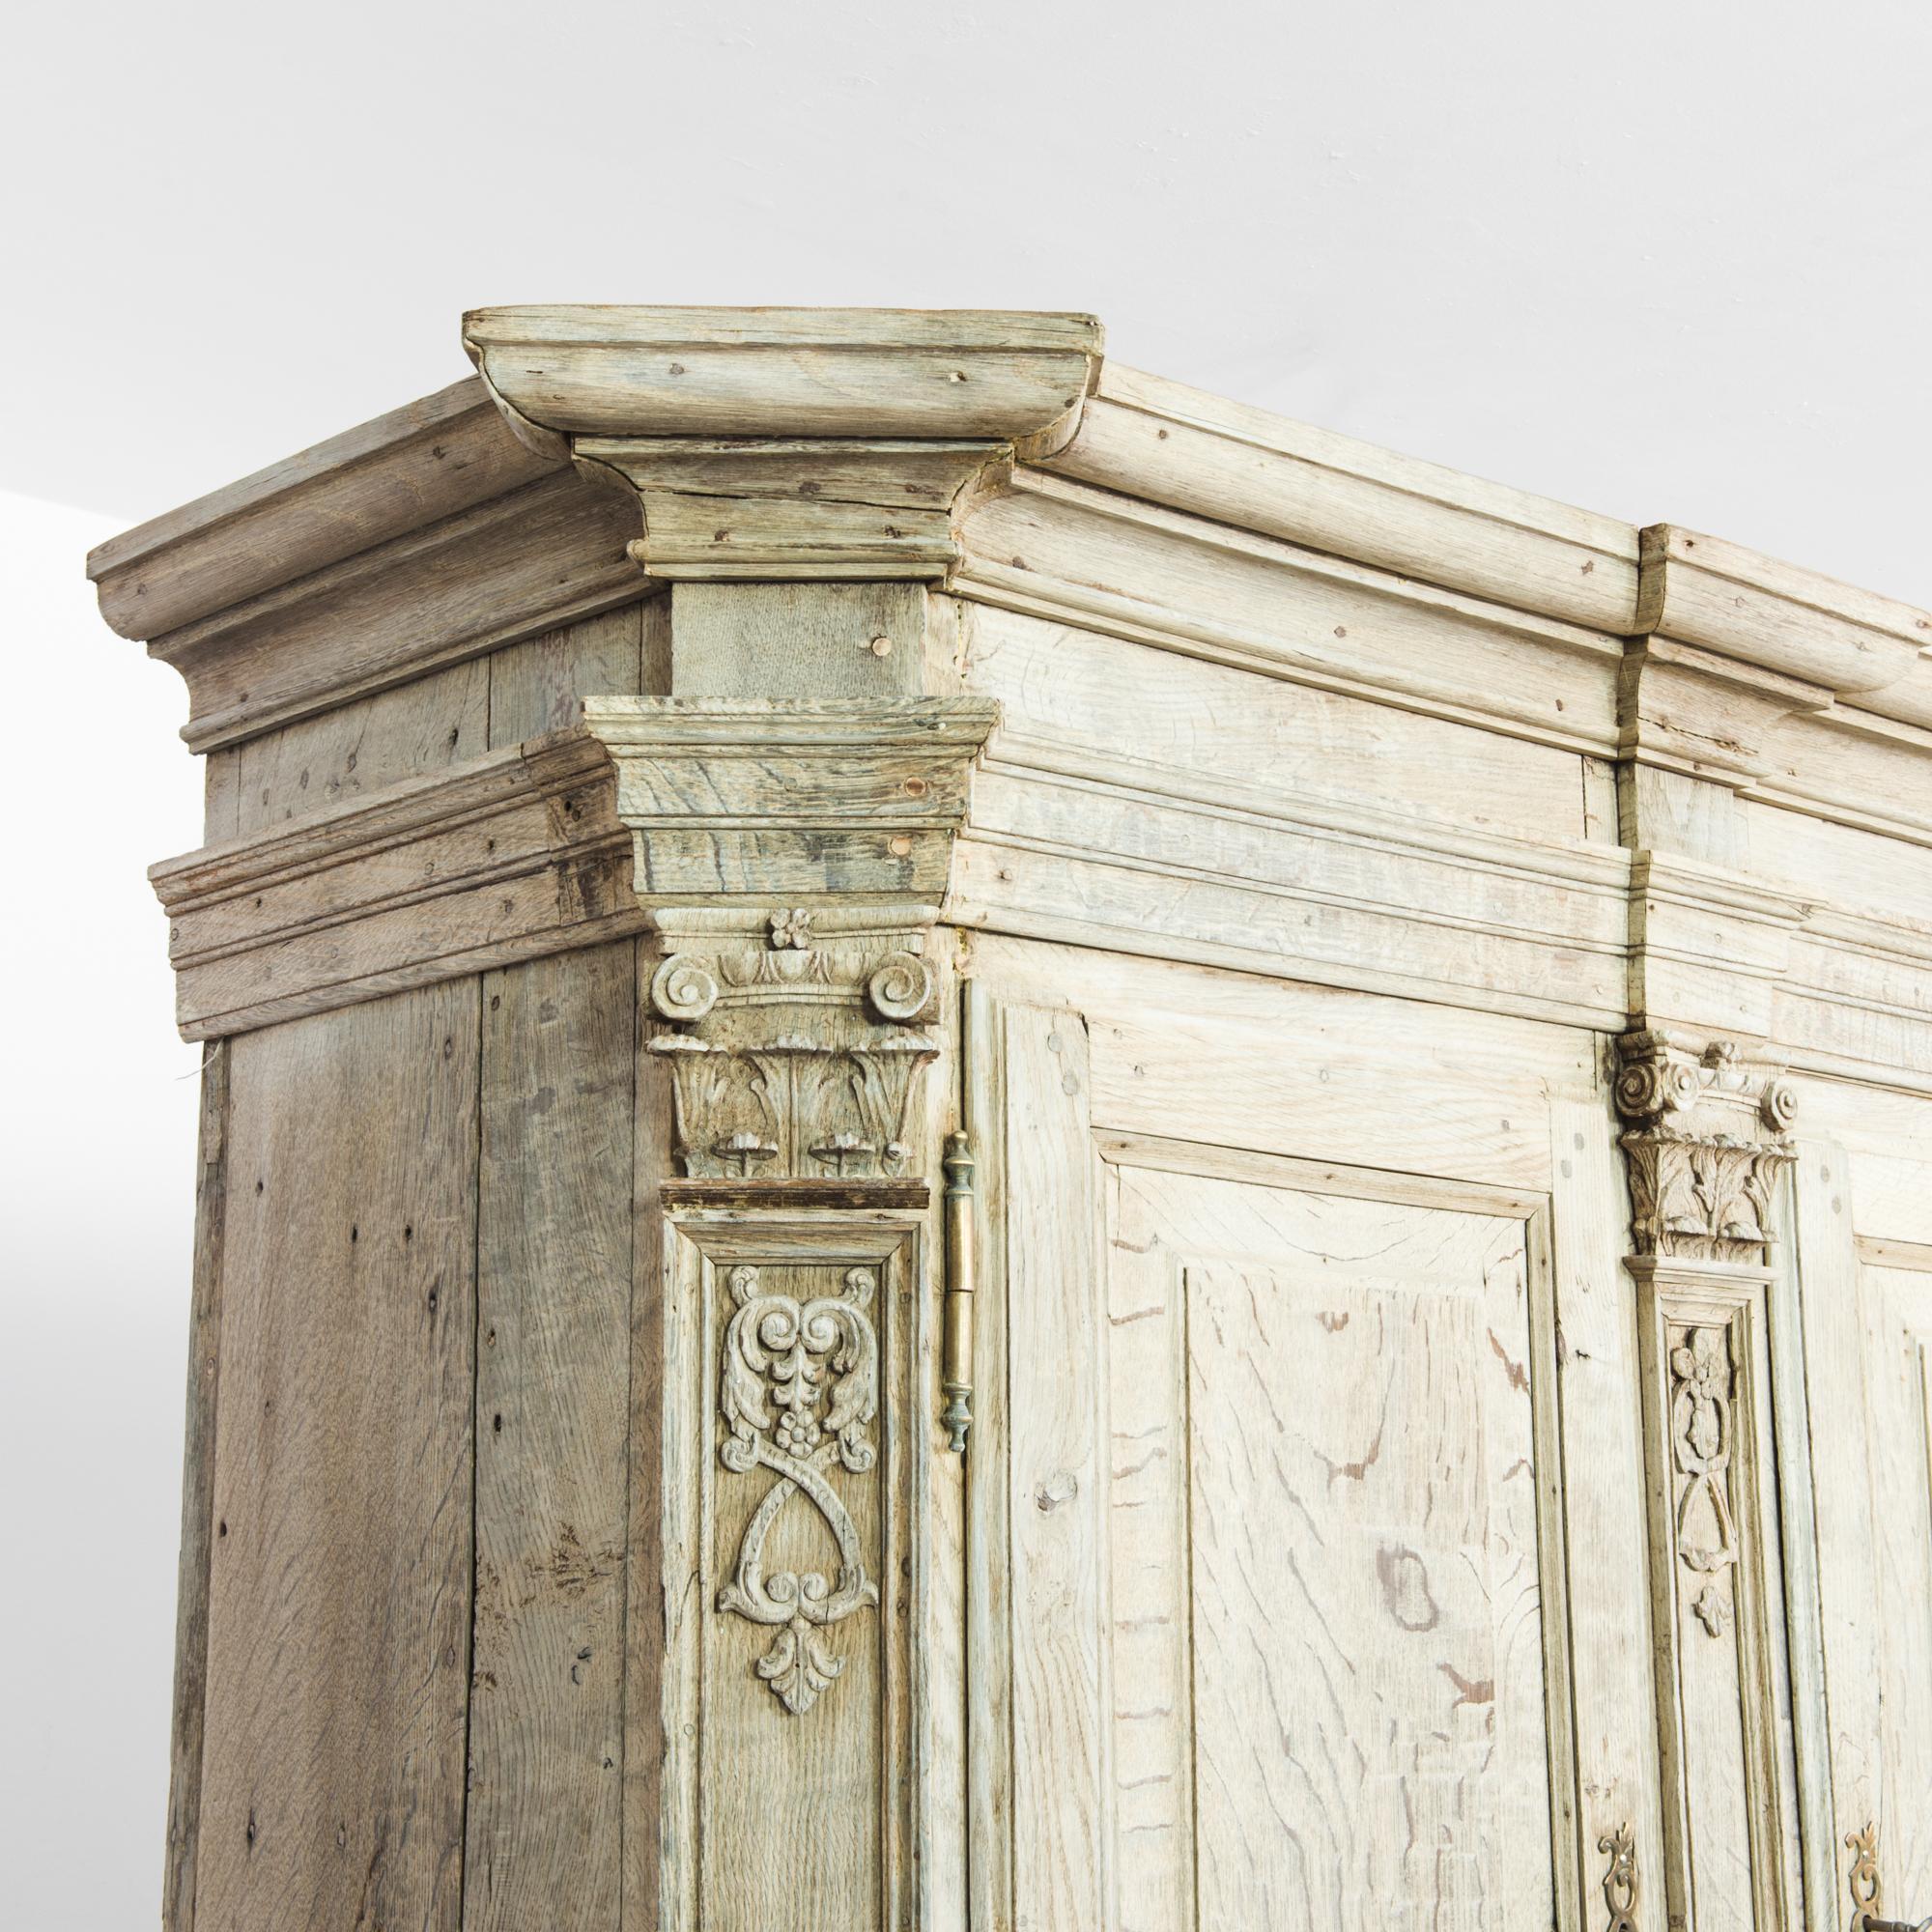 Une armoire en chêne blanchi de Belgique, produite vers 1780. En excellent état de fonctionnement, ce cabinet du XVIIIe siècle est une trouvaille extraordinaire. Presque aussi large que haute, cette pièce comporte deux niveaux d'armoires doubles